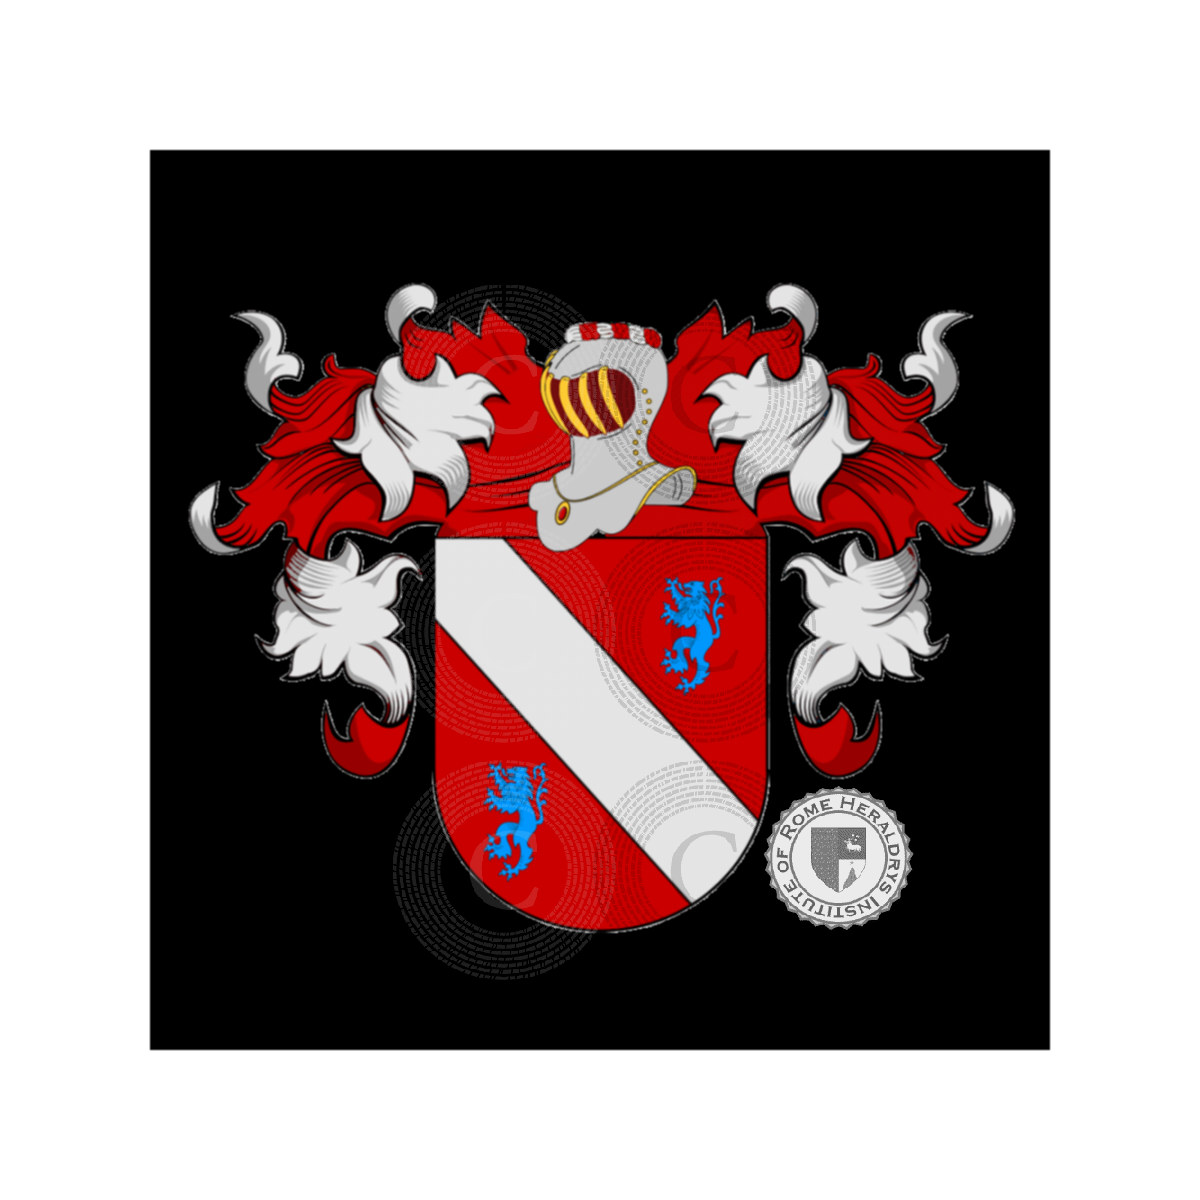 Coat of arms of familyBarbato